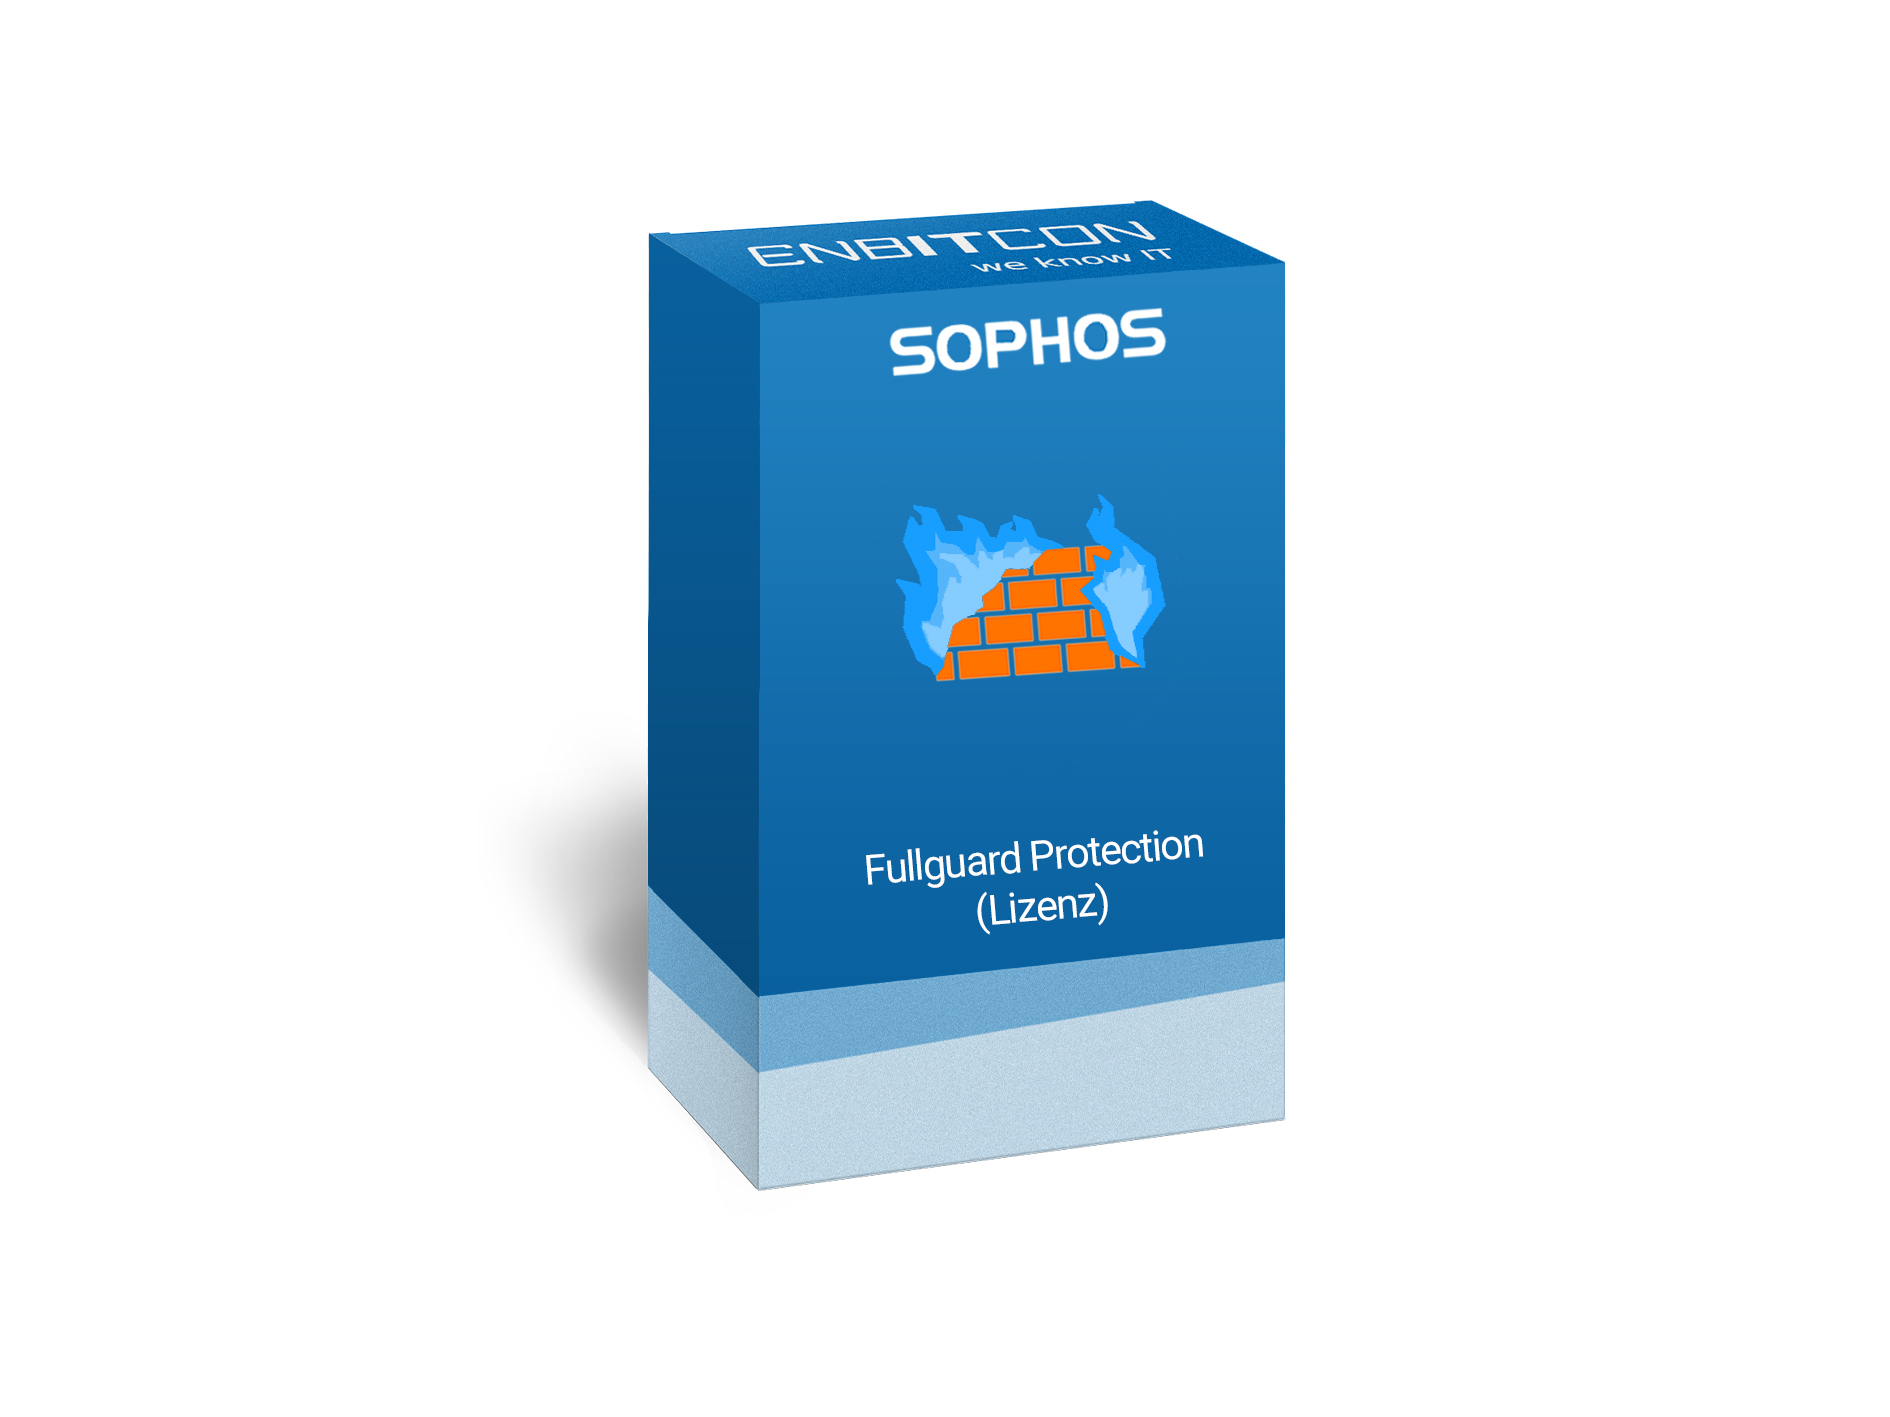 Sophos Full Guard Bundle Lizenz Vorschaubild bestehend aus einem blauen Schild, indem sich eine orangene  Mauer mit blauen Flammen befinden